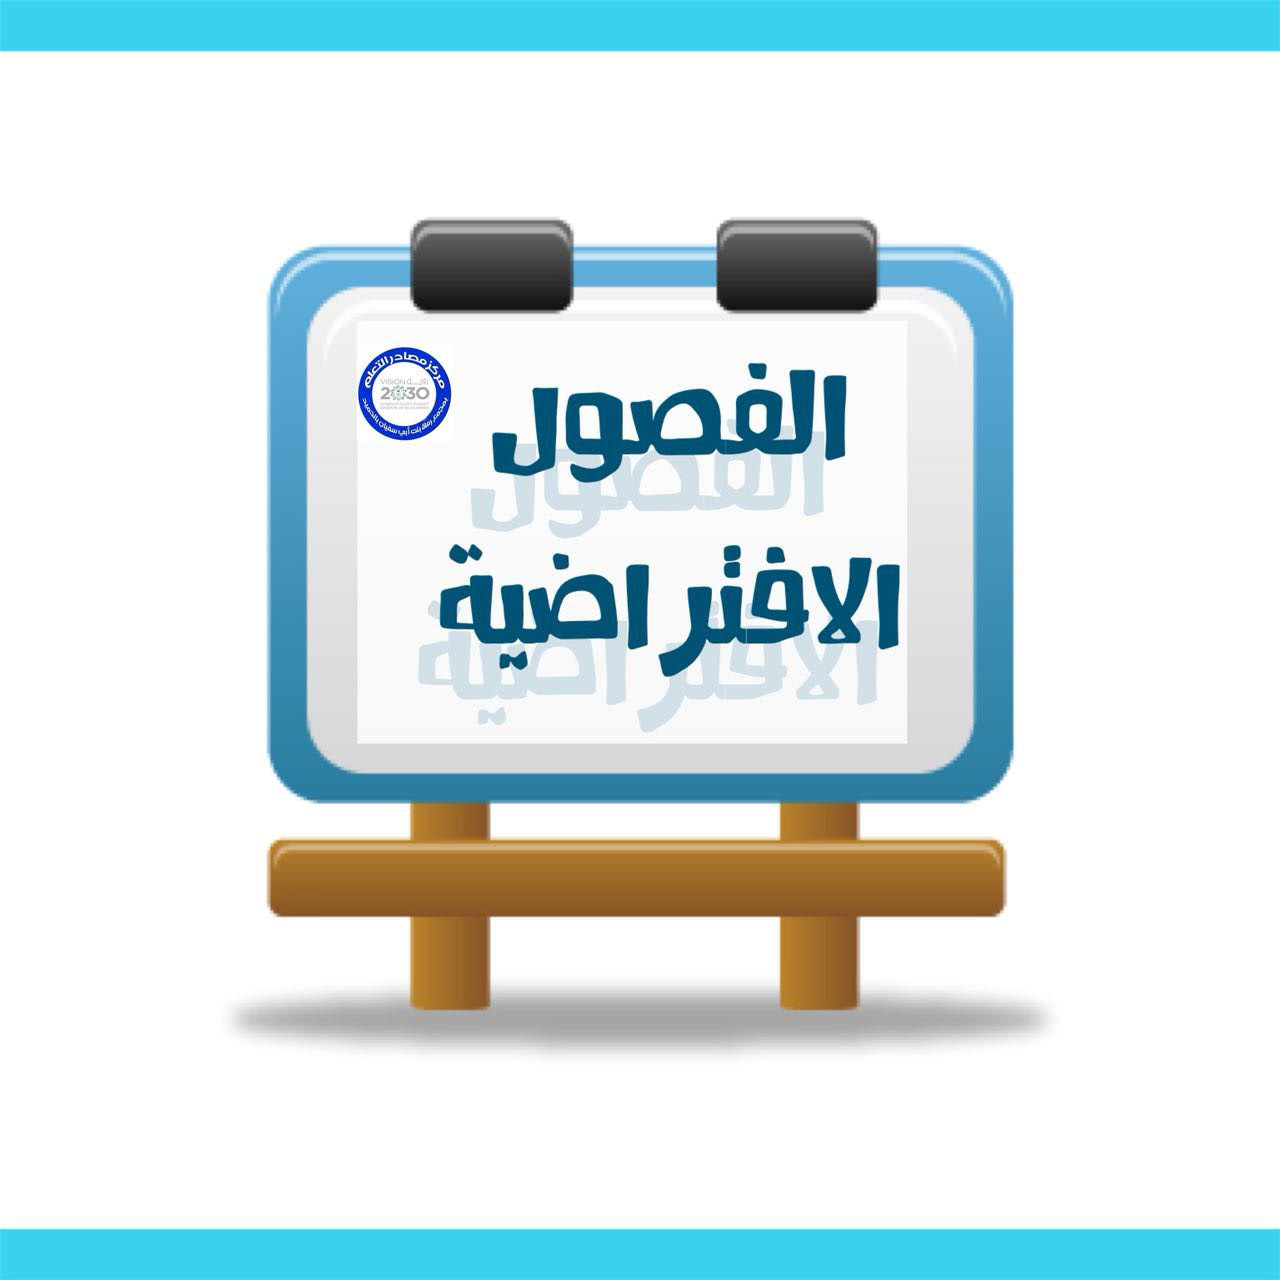 مدونة مركز مصادر التعلم بمجمع رملة بنت ابي سفيان الفصول الافتراضية